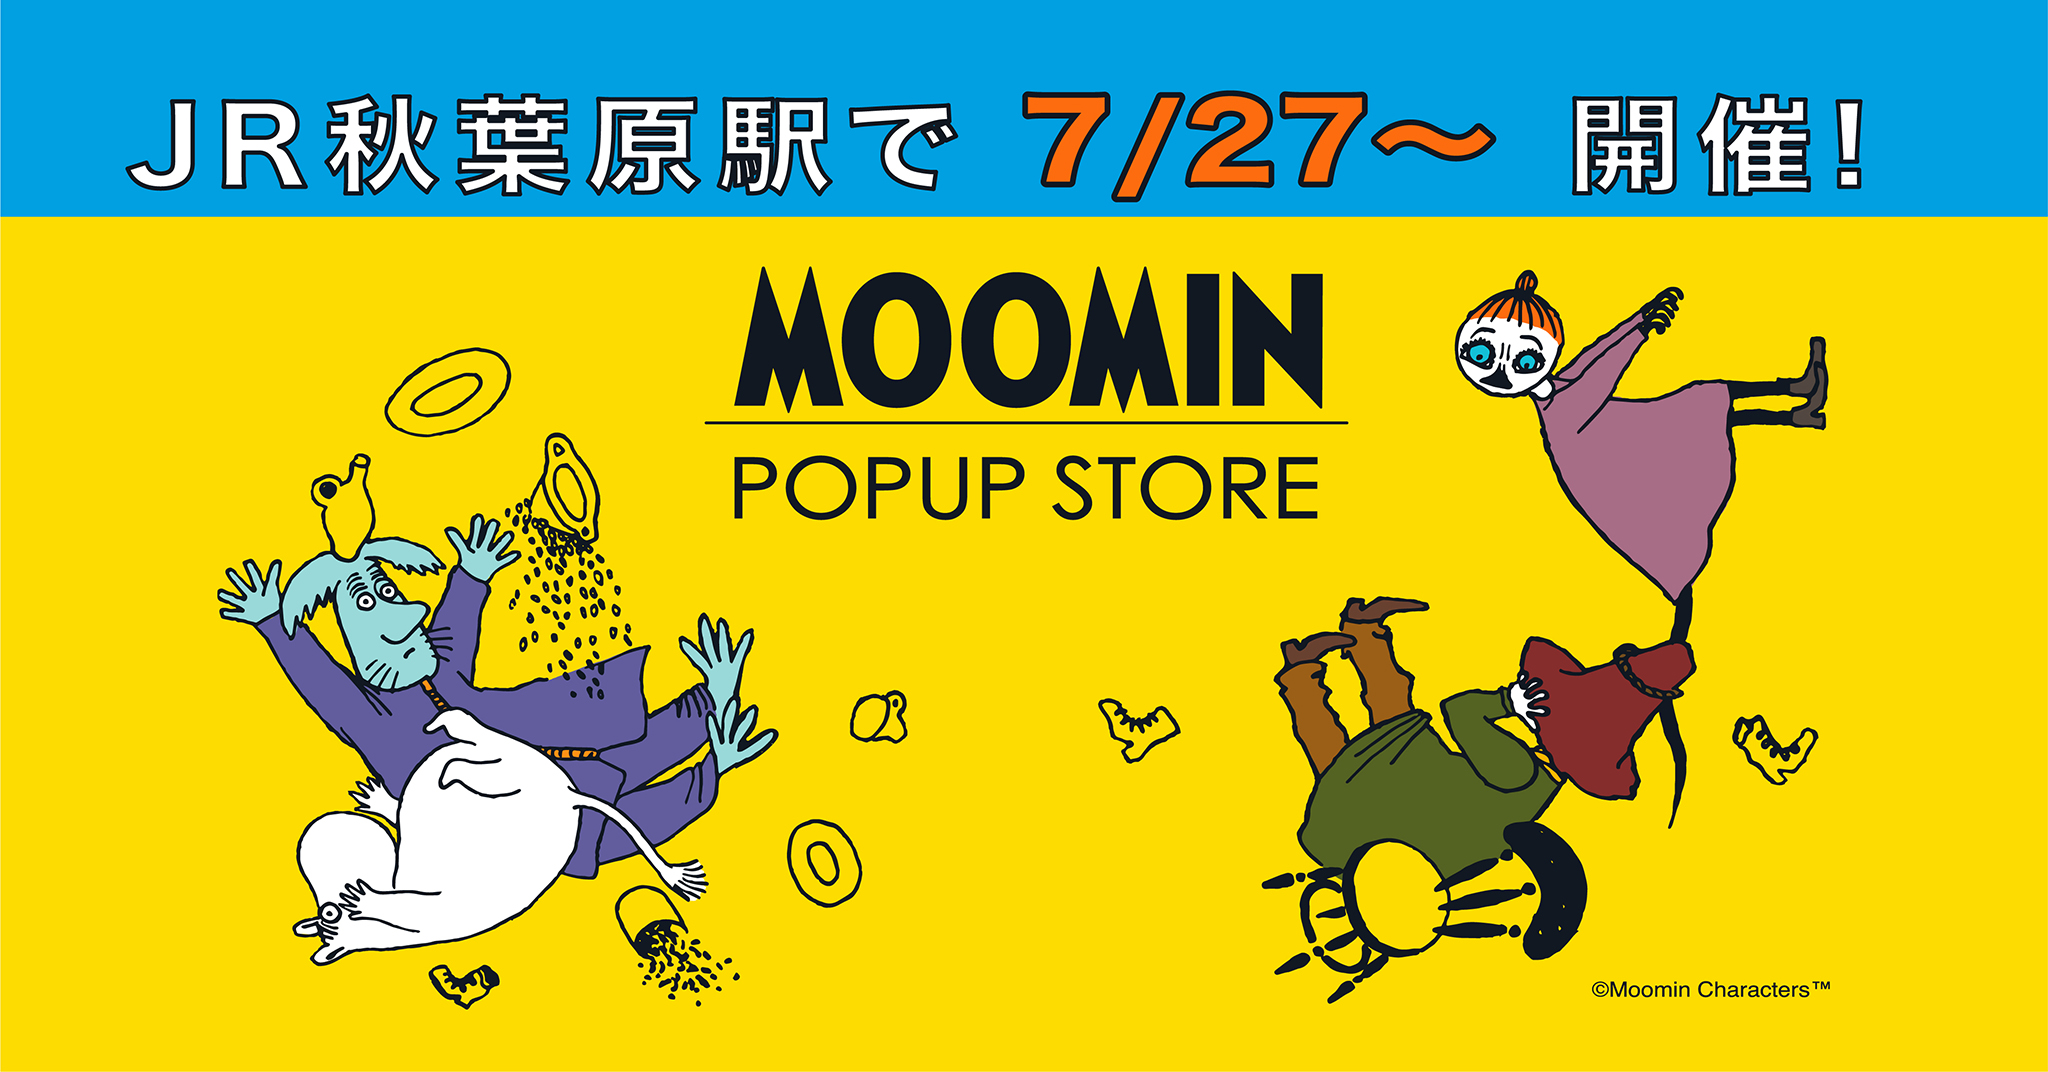 開催情報】「MOOMIN POPUP STORE」 ＠JR秋葉原駅 | ムーミン公式サイト